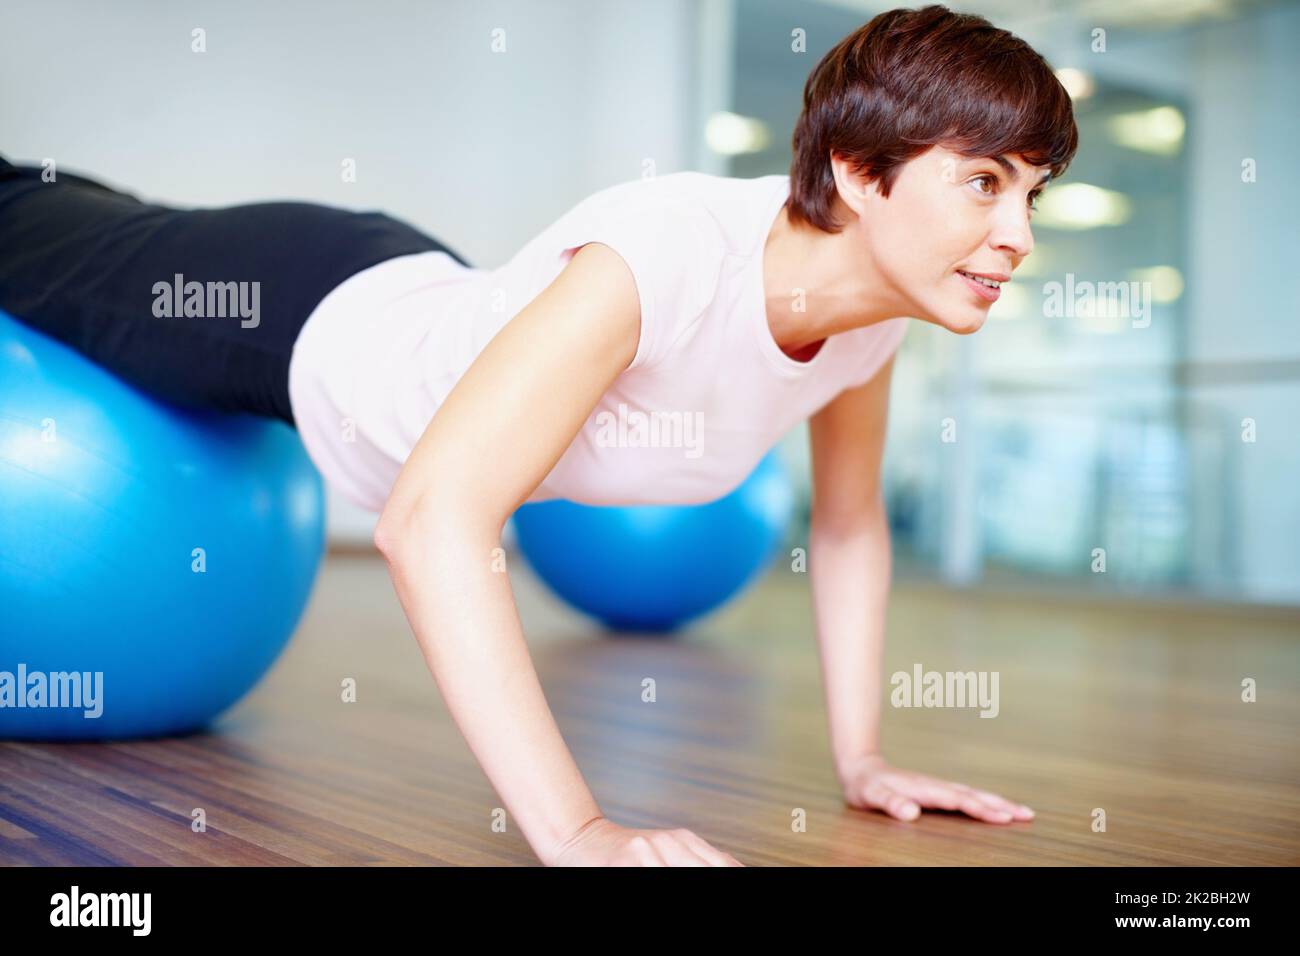 Spingere verso l'alto. Donna che fa push up utilizzando pilates palla durante una sessione di allenamento. Foto Stock